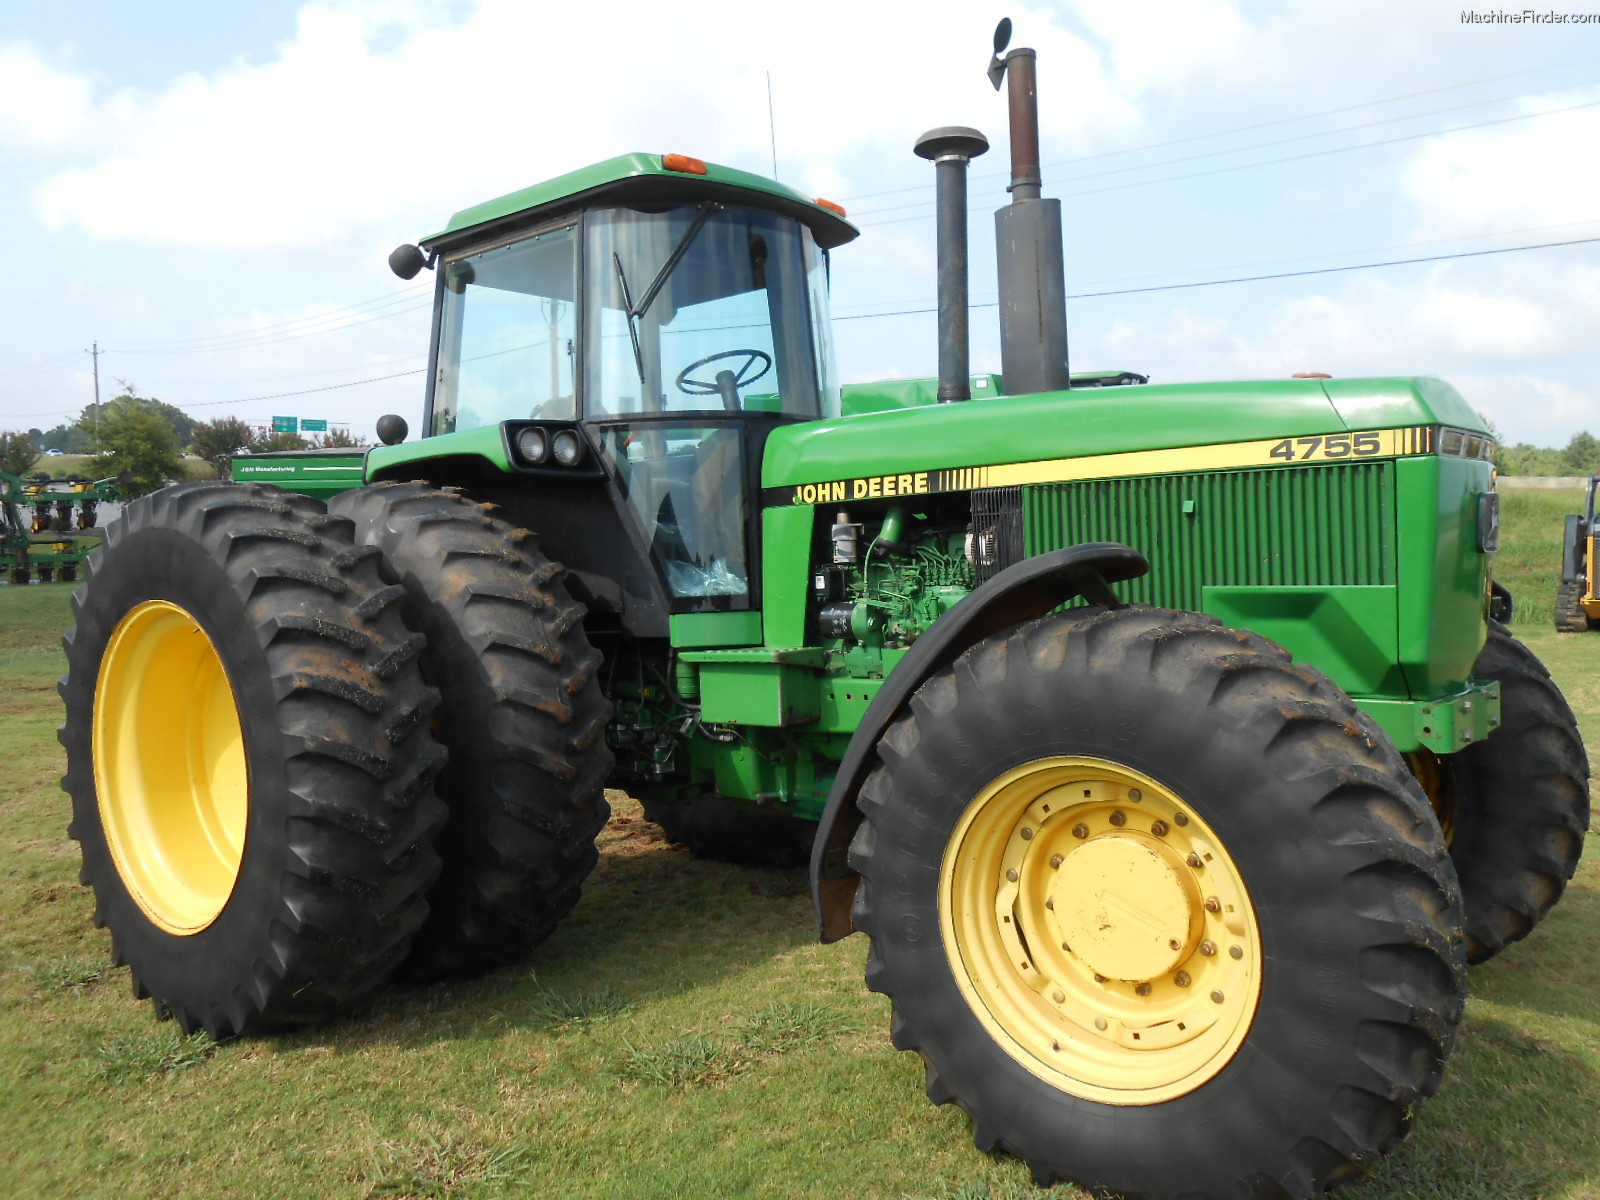 1991 John Deere 4755 Tractors - Row Crop (+100hp) - John Deere ...